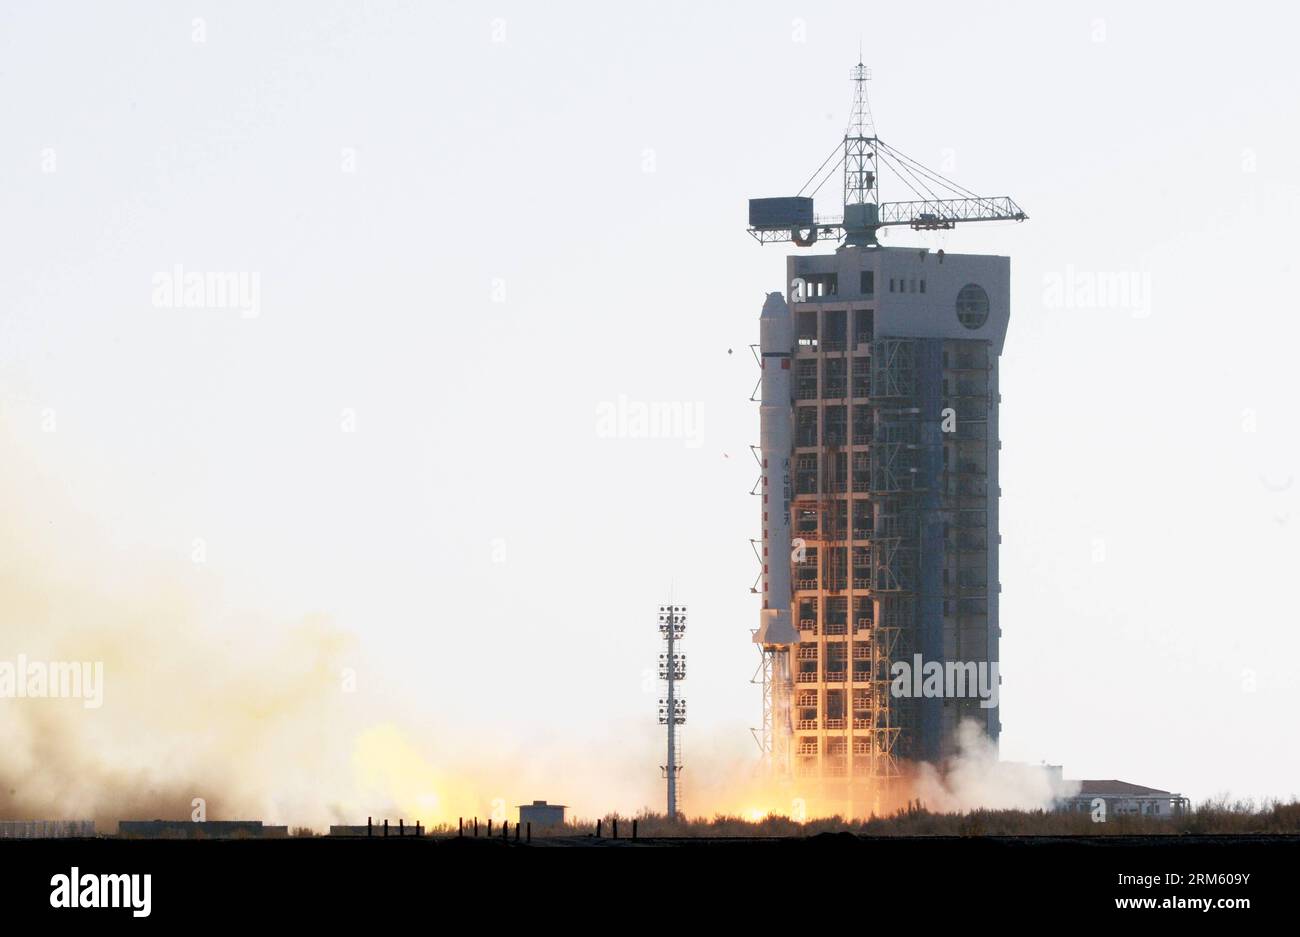 Bildnummer: 60751477 Datum: 25.11.2013 Copyright: imago/Xinhua eine lange März-2D-Trägerrakete mit dem Experiment-5-Satelliten springt vom Startplatz des Jiuquan Satellite Launch Center in Jiuquan, Provinz Gansu im Nordwesten Chinas, 25. November 2013. China hat am Montag erfolgreich den Satelliten gestartet, der technologische Experimente und Umweltuntersuchungen durchführen wird. (Xinhua/Zhu Zheng) (ry) CHINA-JIUQUAN-SATELLITE-LAUNCH (CN) PUBLICATIONxNOTxINxCHN Gesellschaft Raumfahrt Start Rakete Raketenstart China xcb x0x 2013 quer Premiumd Stockfoto